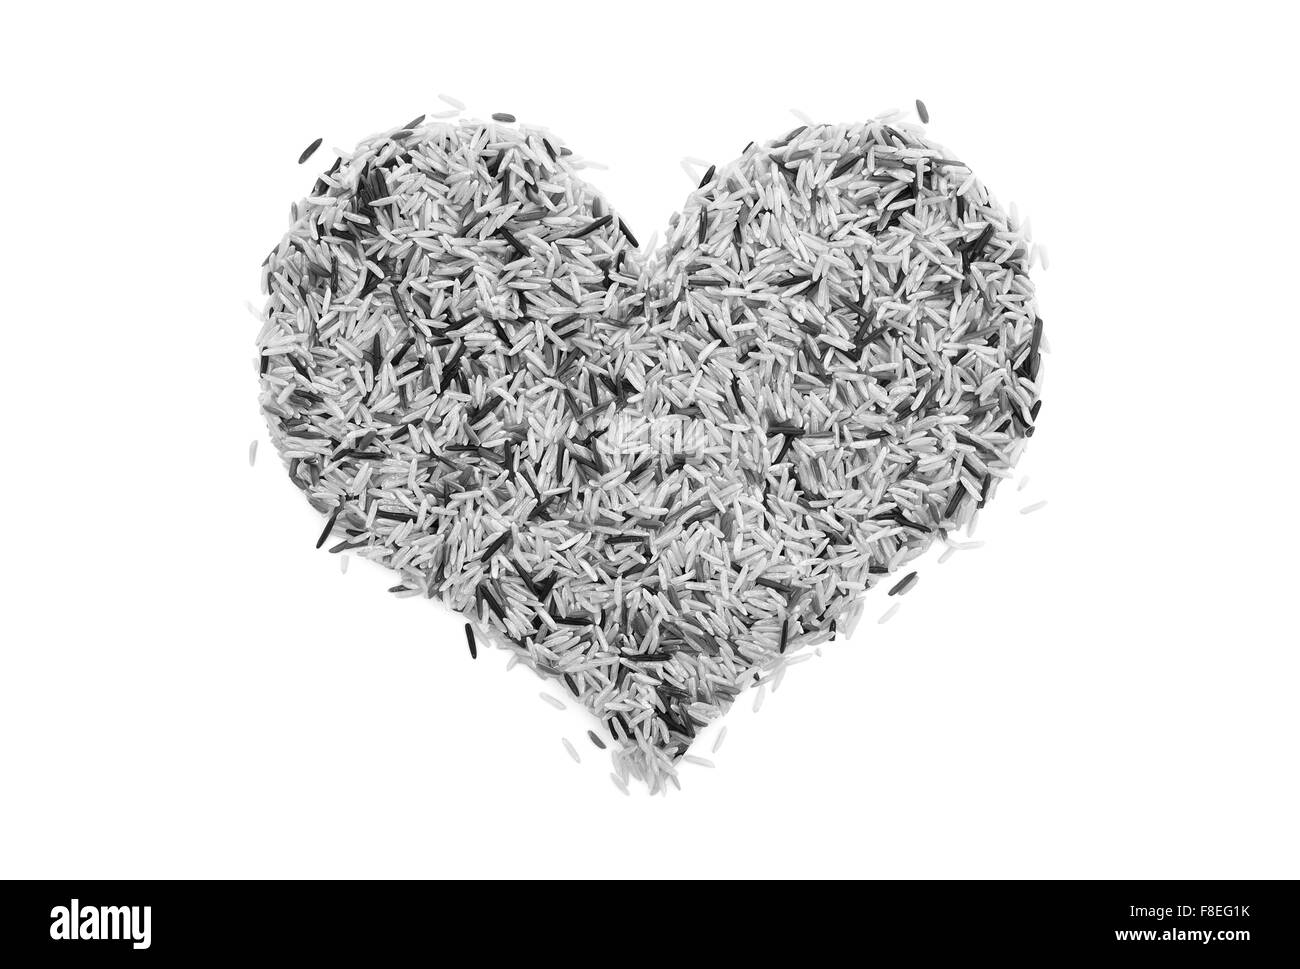 Wildreis in Form eines Herzens, isoliert auf einem weißen Hintergrund - monochrome Verarbeitung Stockfoto